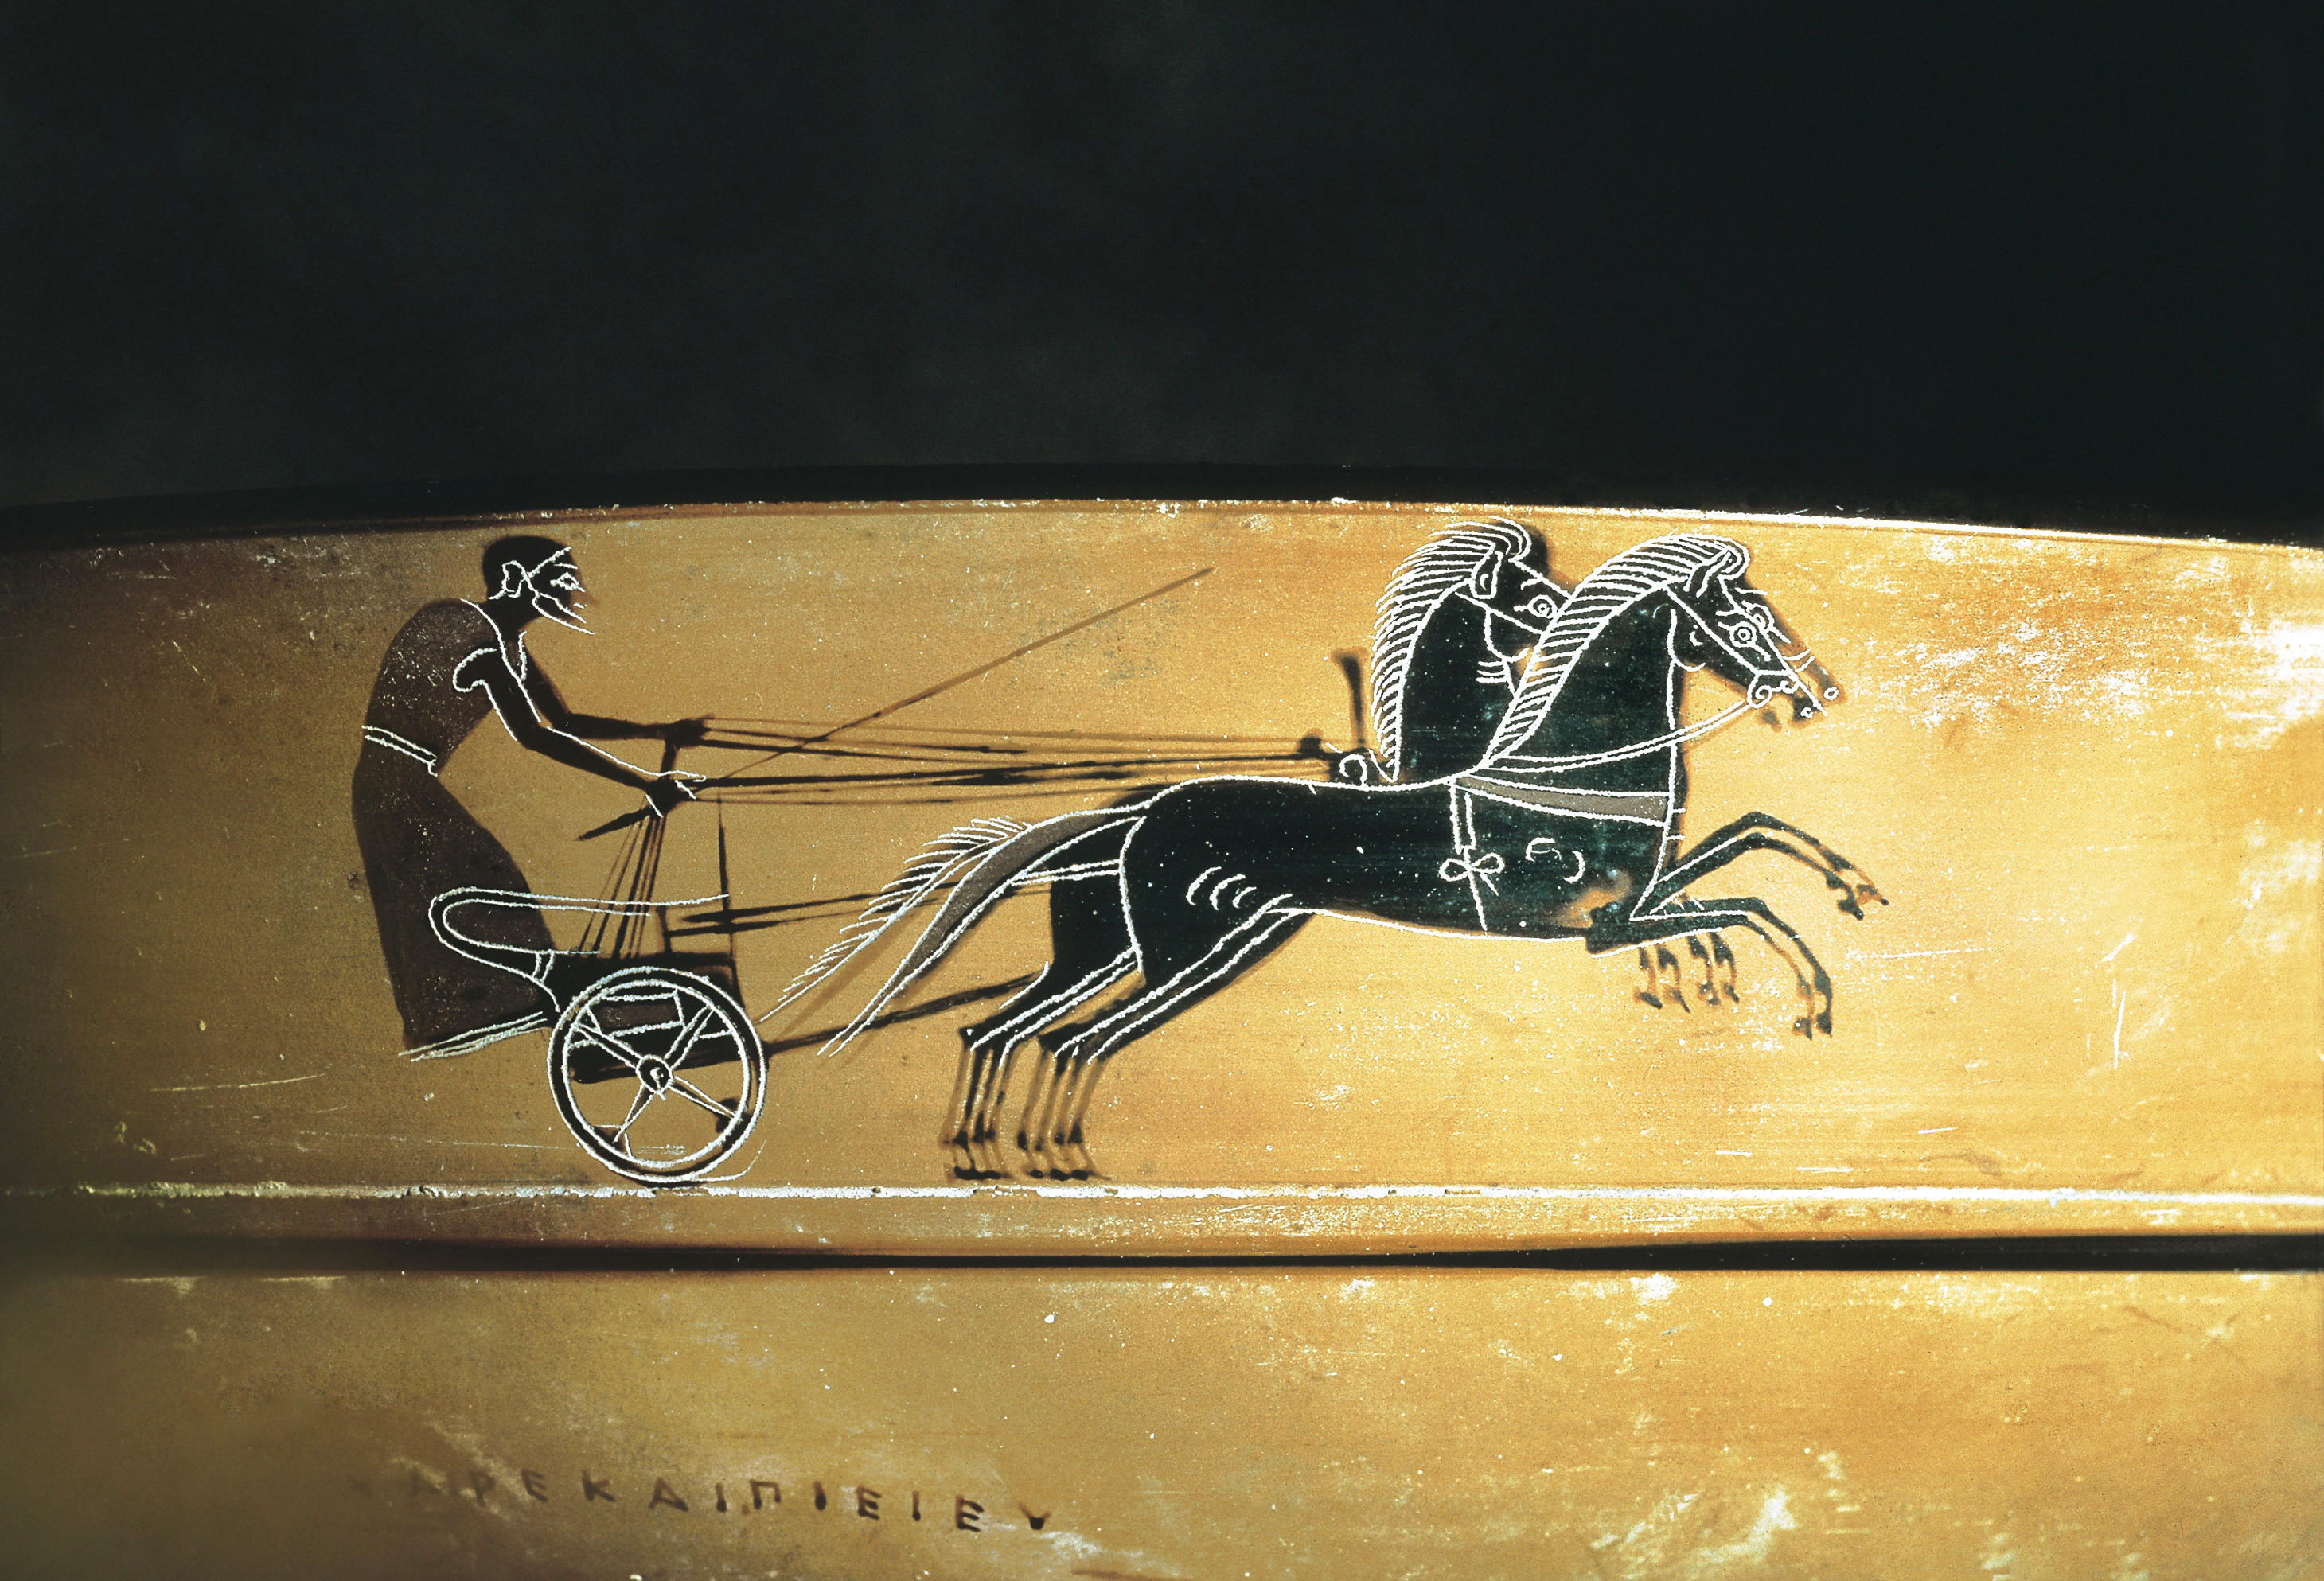 Course de char , jeux olympiques dans l'Antiquité